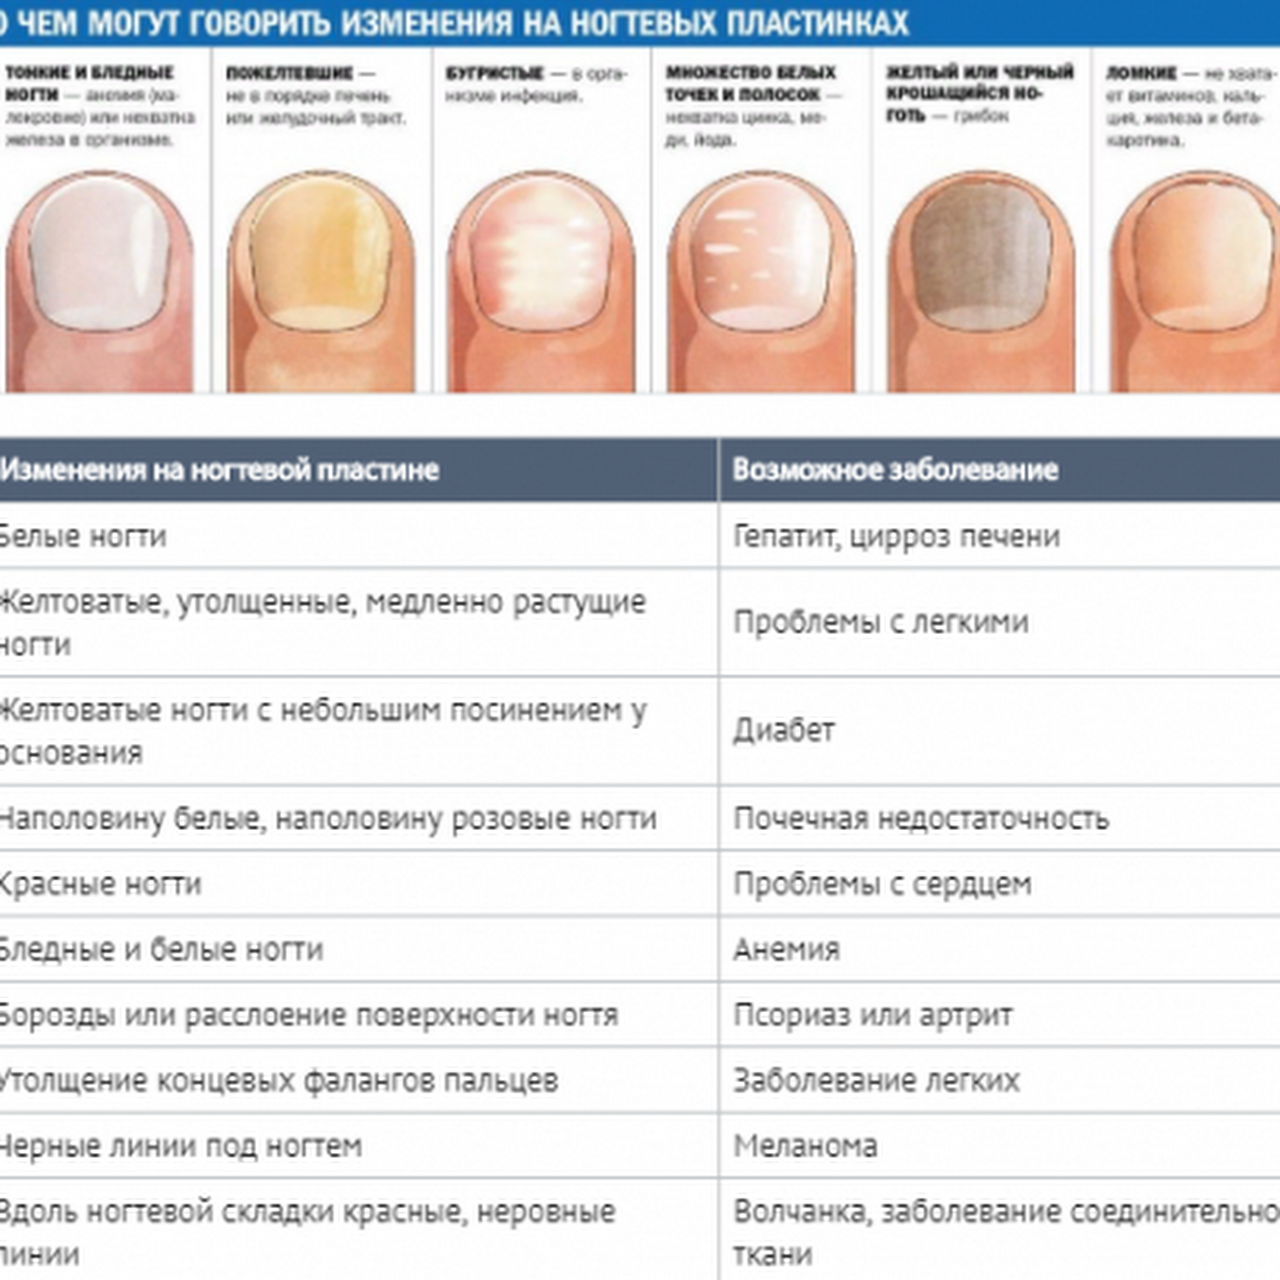 Почему ногти стали жесткими. Определение болезни по состоянию ногтей. Заболевания ногтей на руках таблица описание. Как определить по цвету ногтей заболевание. Выявление болезни по ногтям.